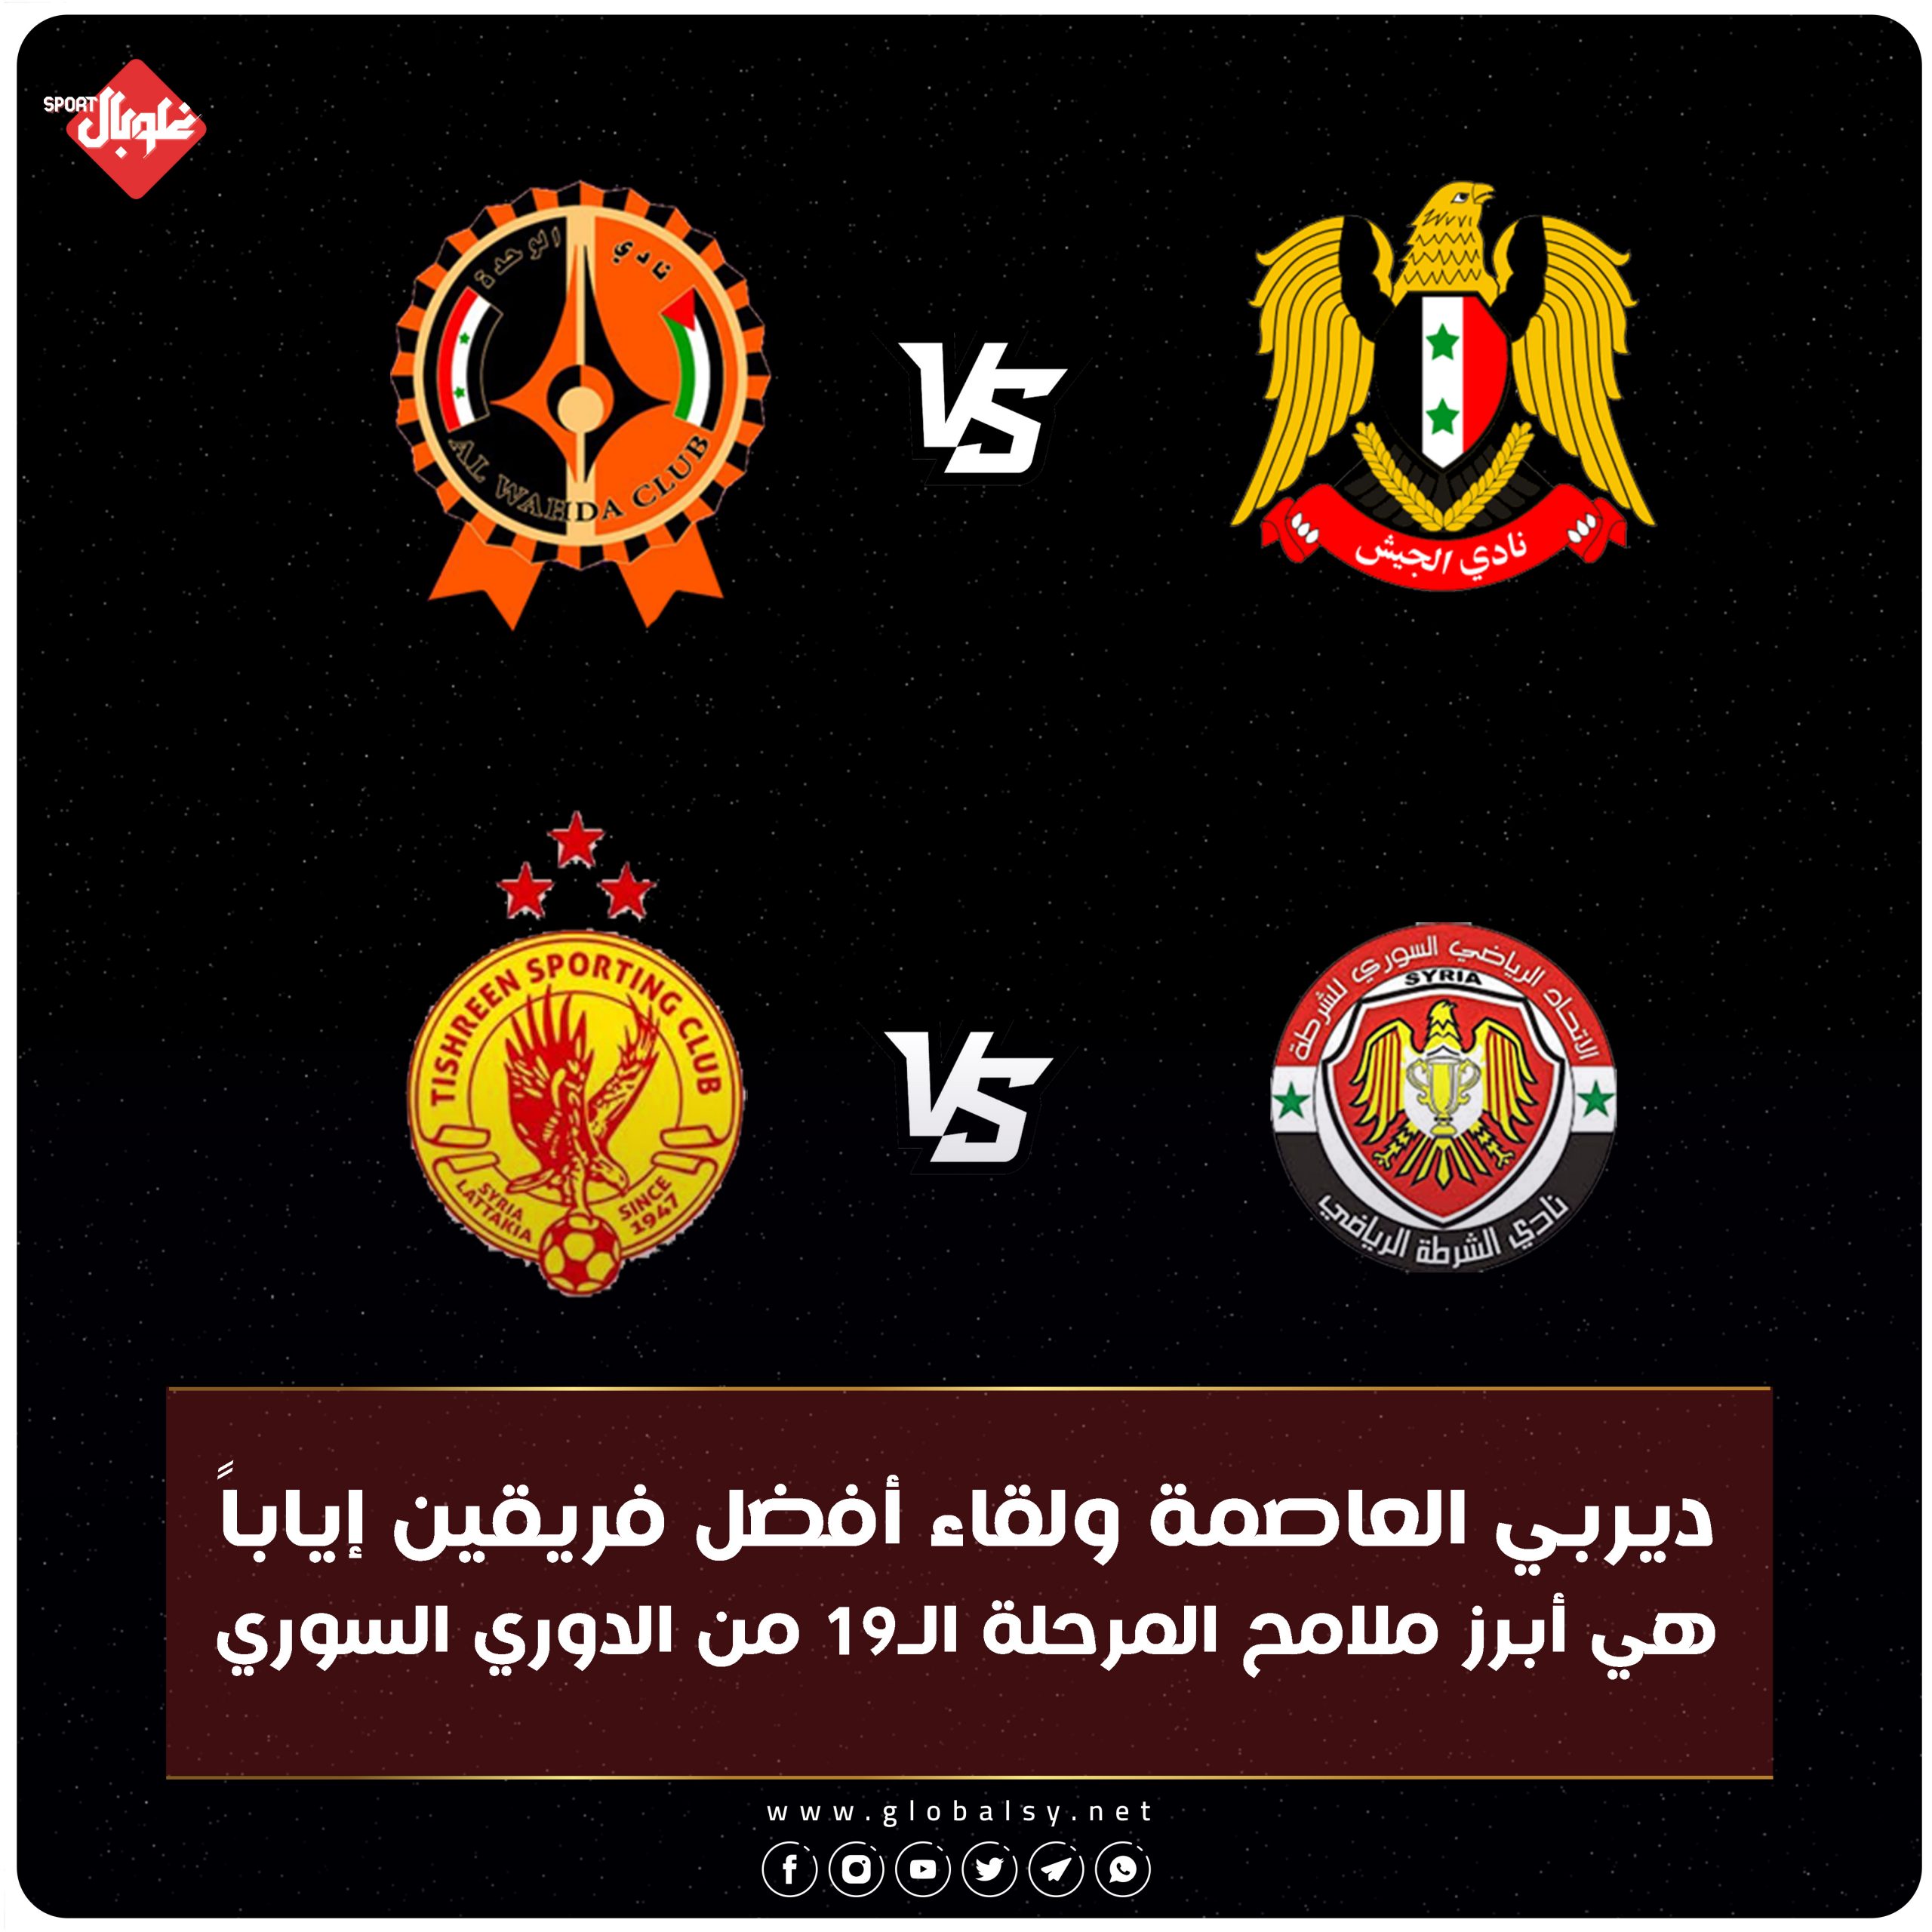 الجولة الـ19 من الدوري السوري لكرة القدم تنطلق اليوم، فما هي أهم اللقاءات؟